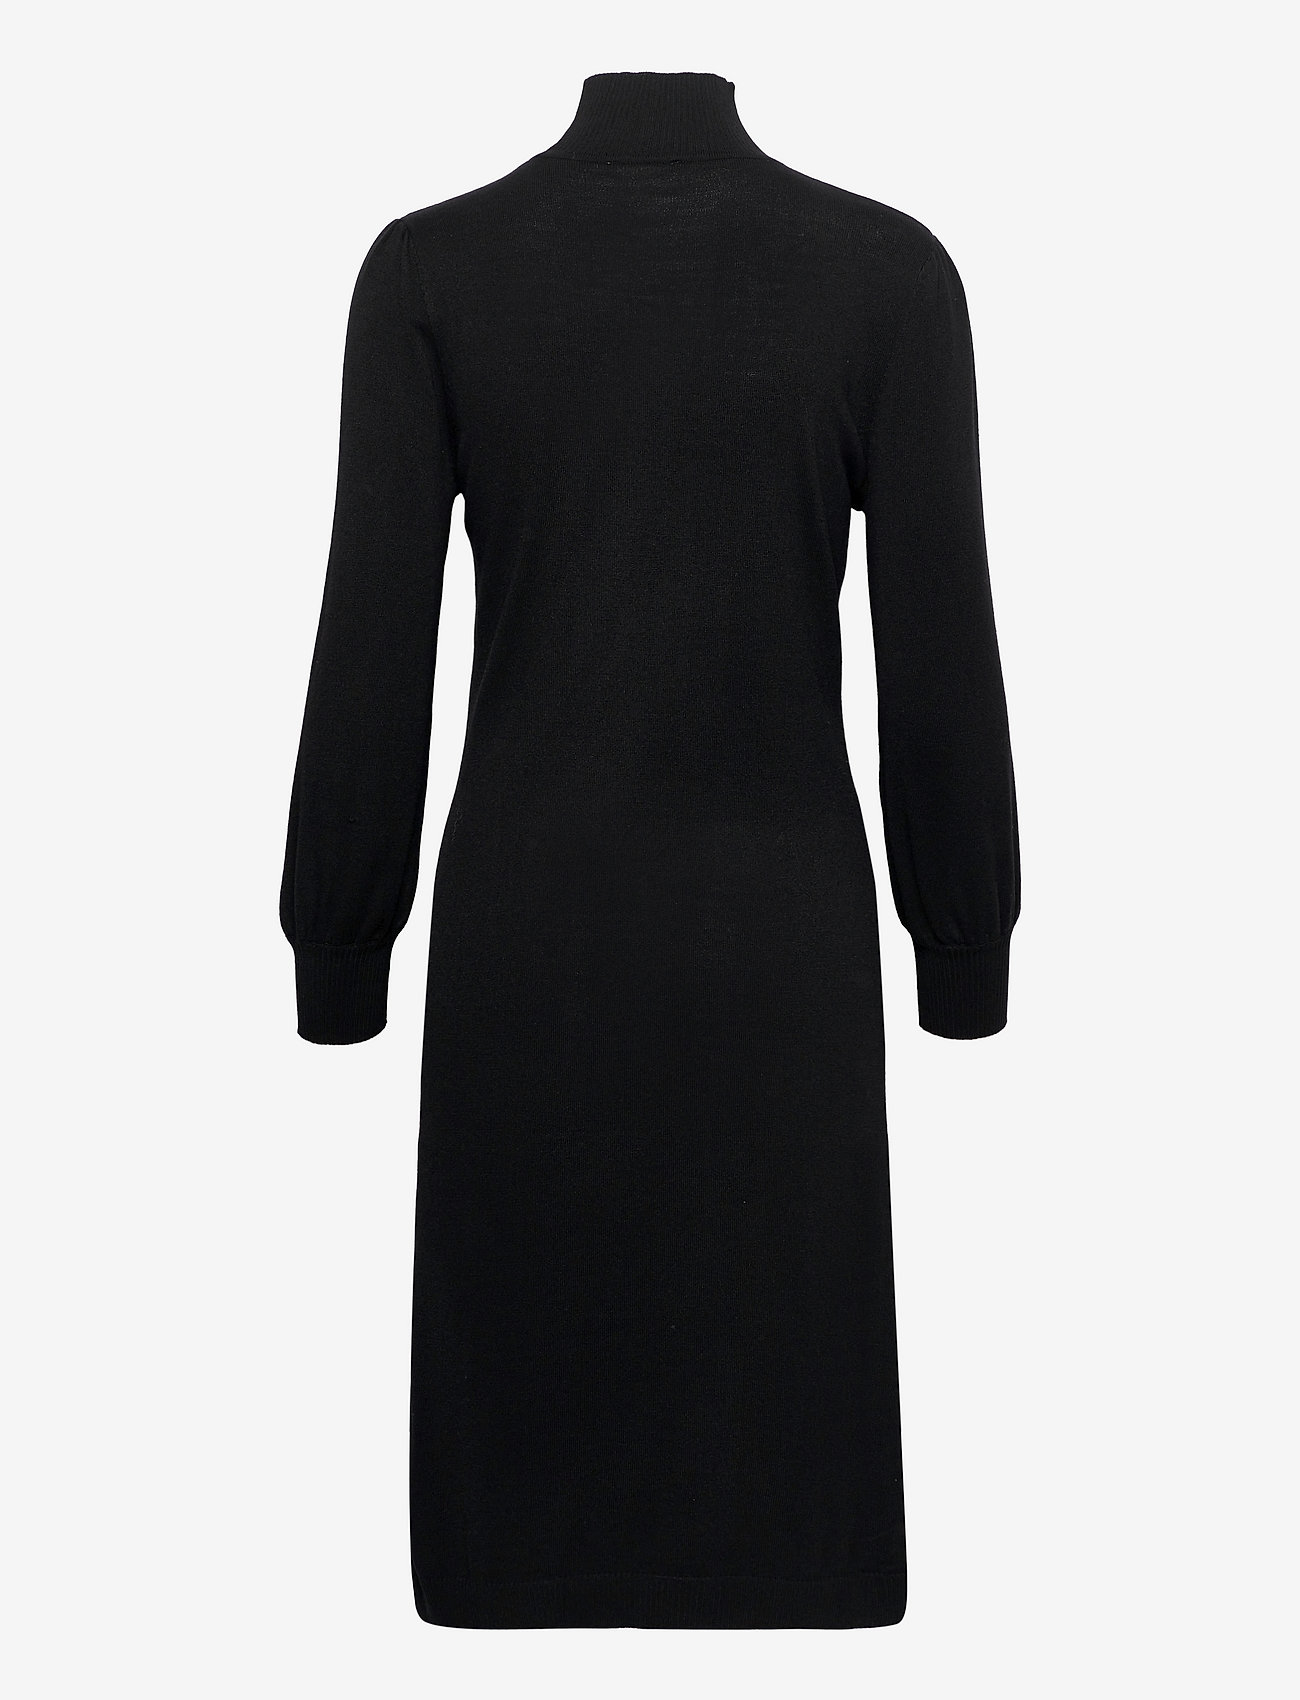 Minus - Mersin highneck knit dress - stickade klänningar - sort - 1